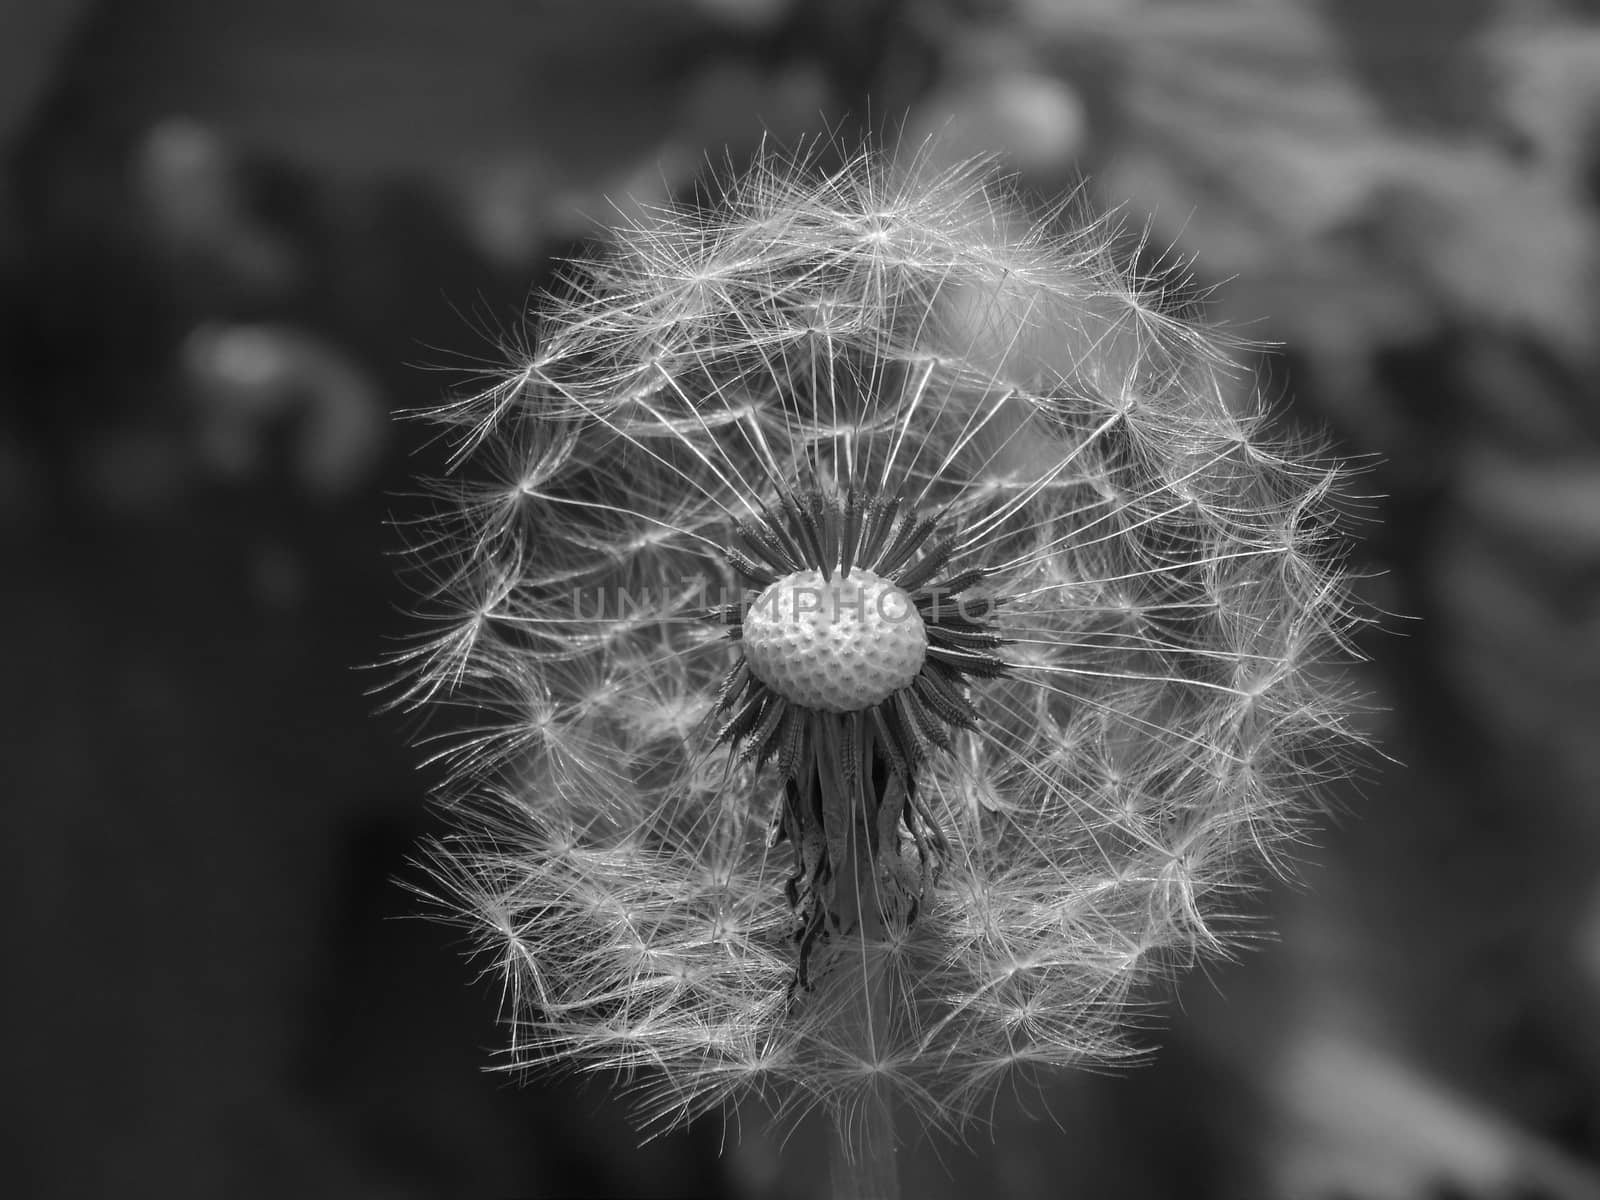 Dandelion in black and white by kimbelij